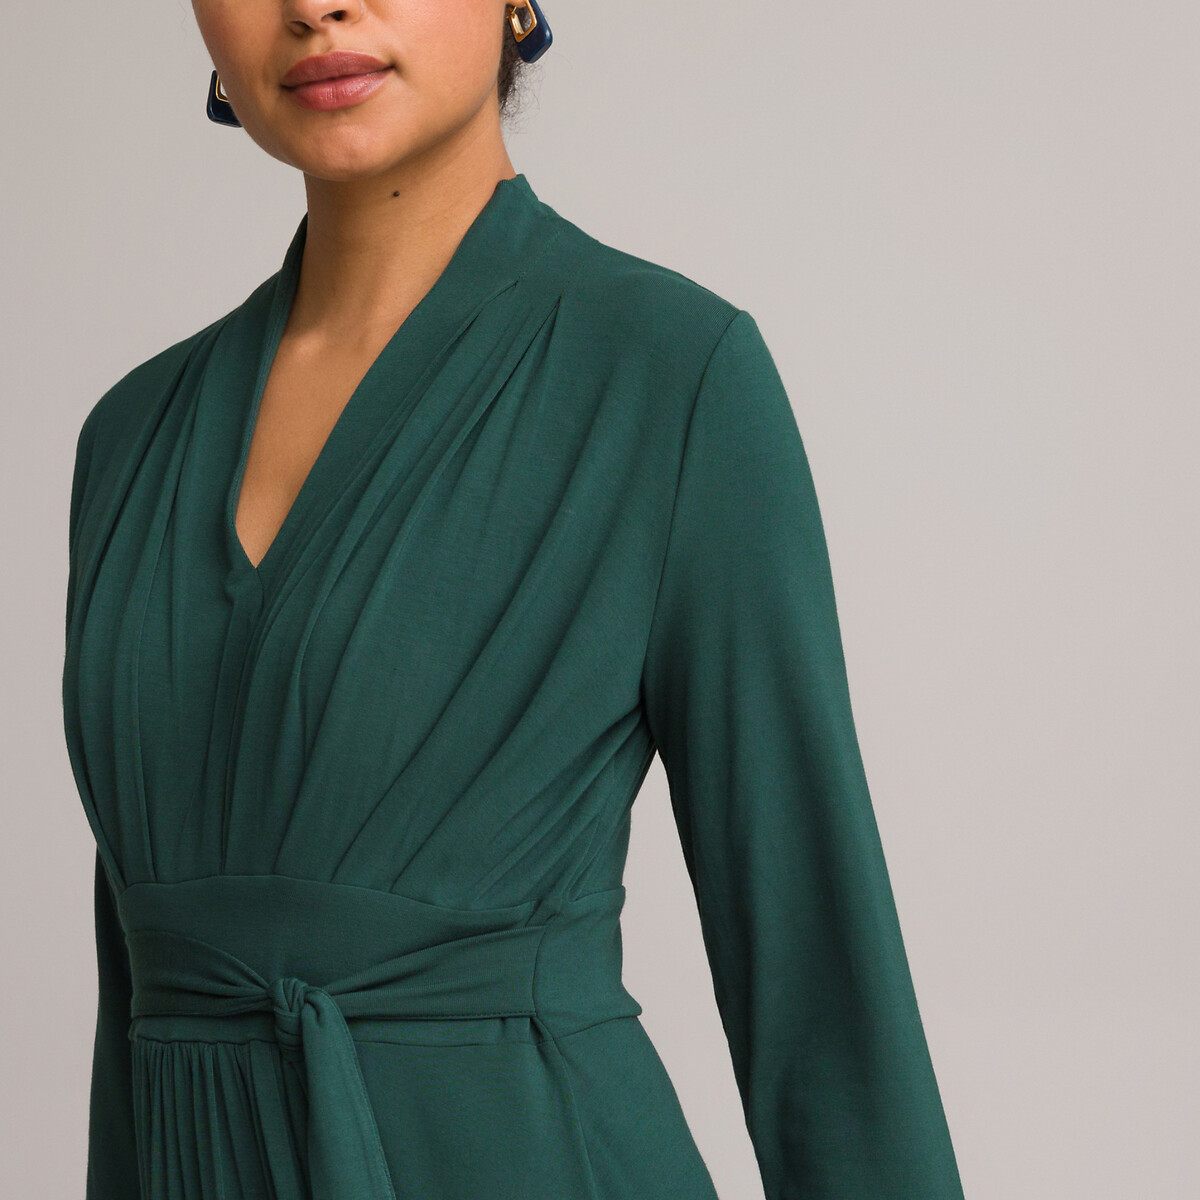 Платье ANNE WEYBURN Платье Расклешенное из струящегося трикотажа с рукавами 34 50 зеленый, размер 50 - фото 3